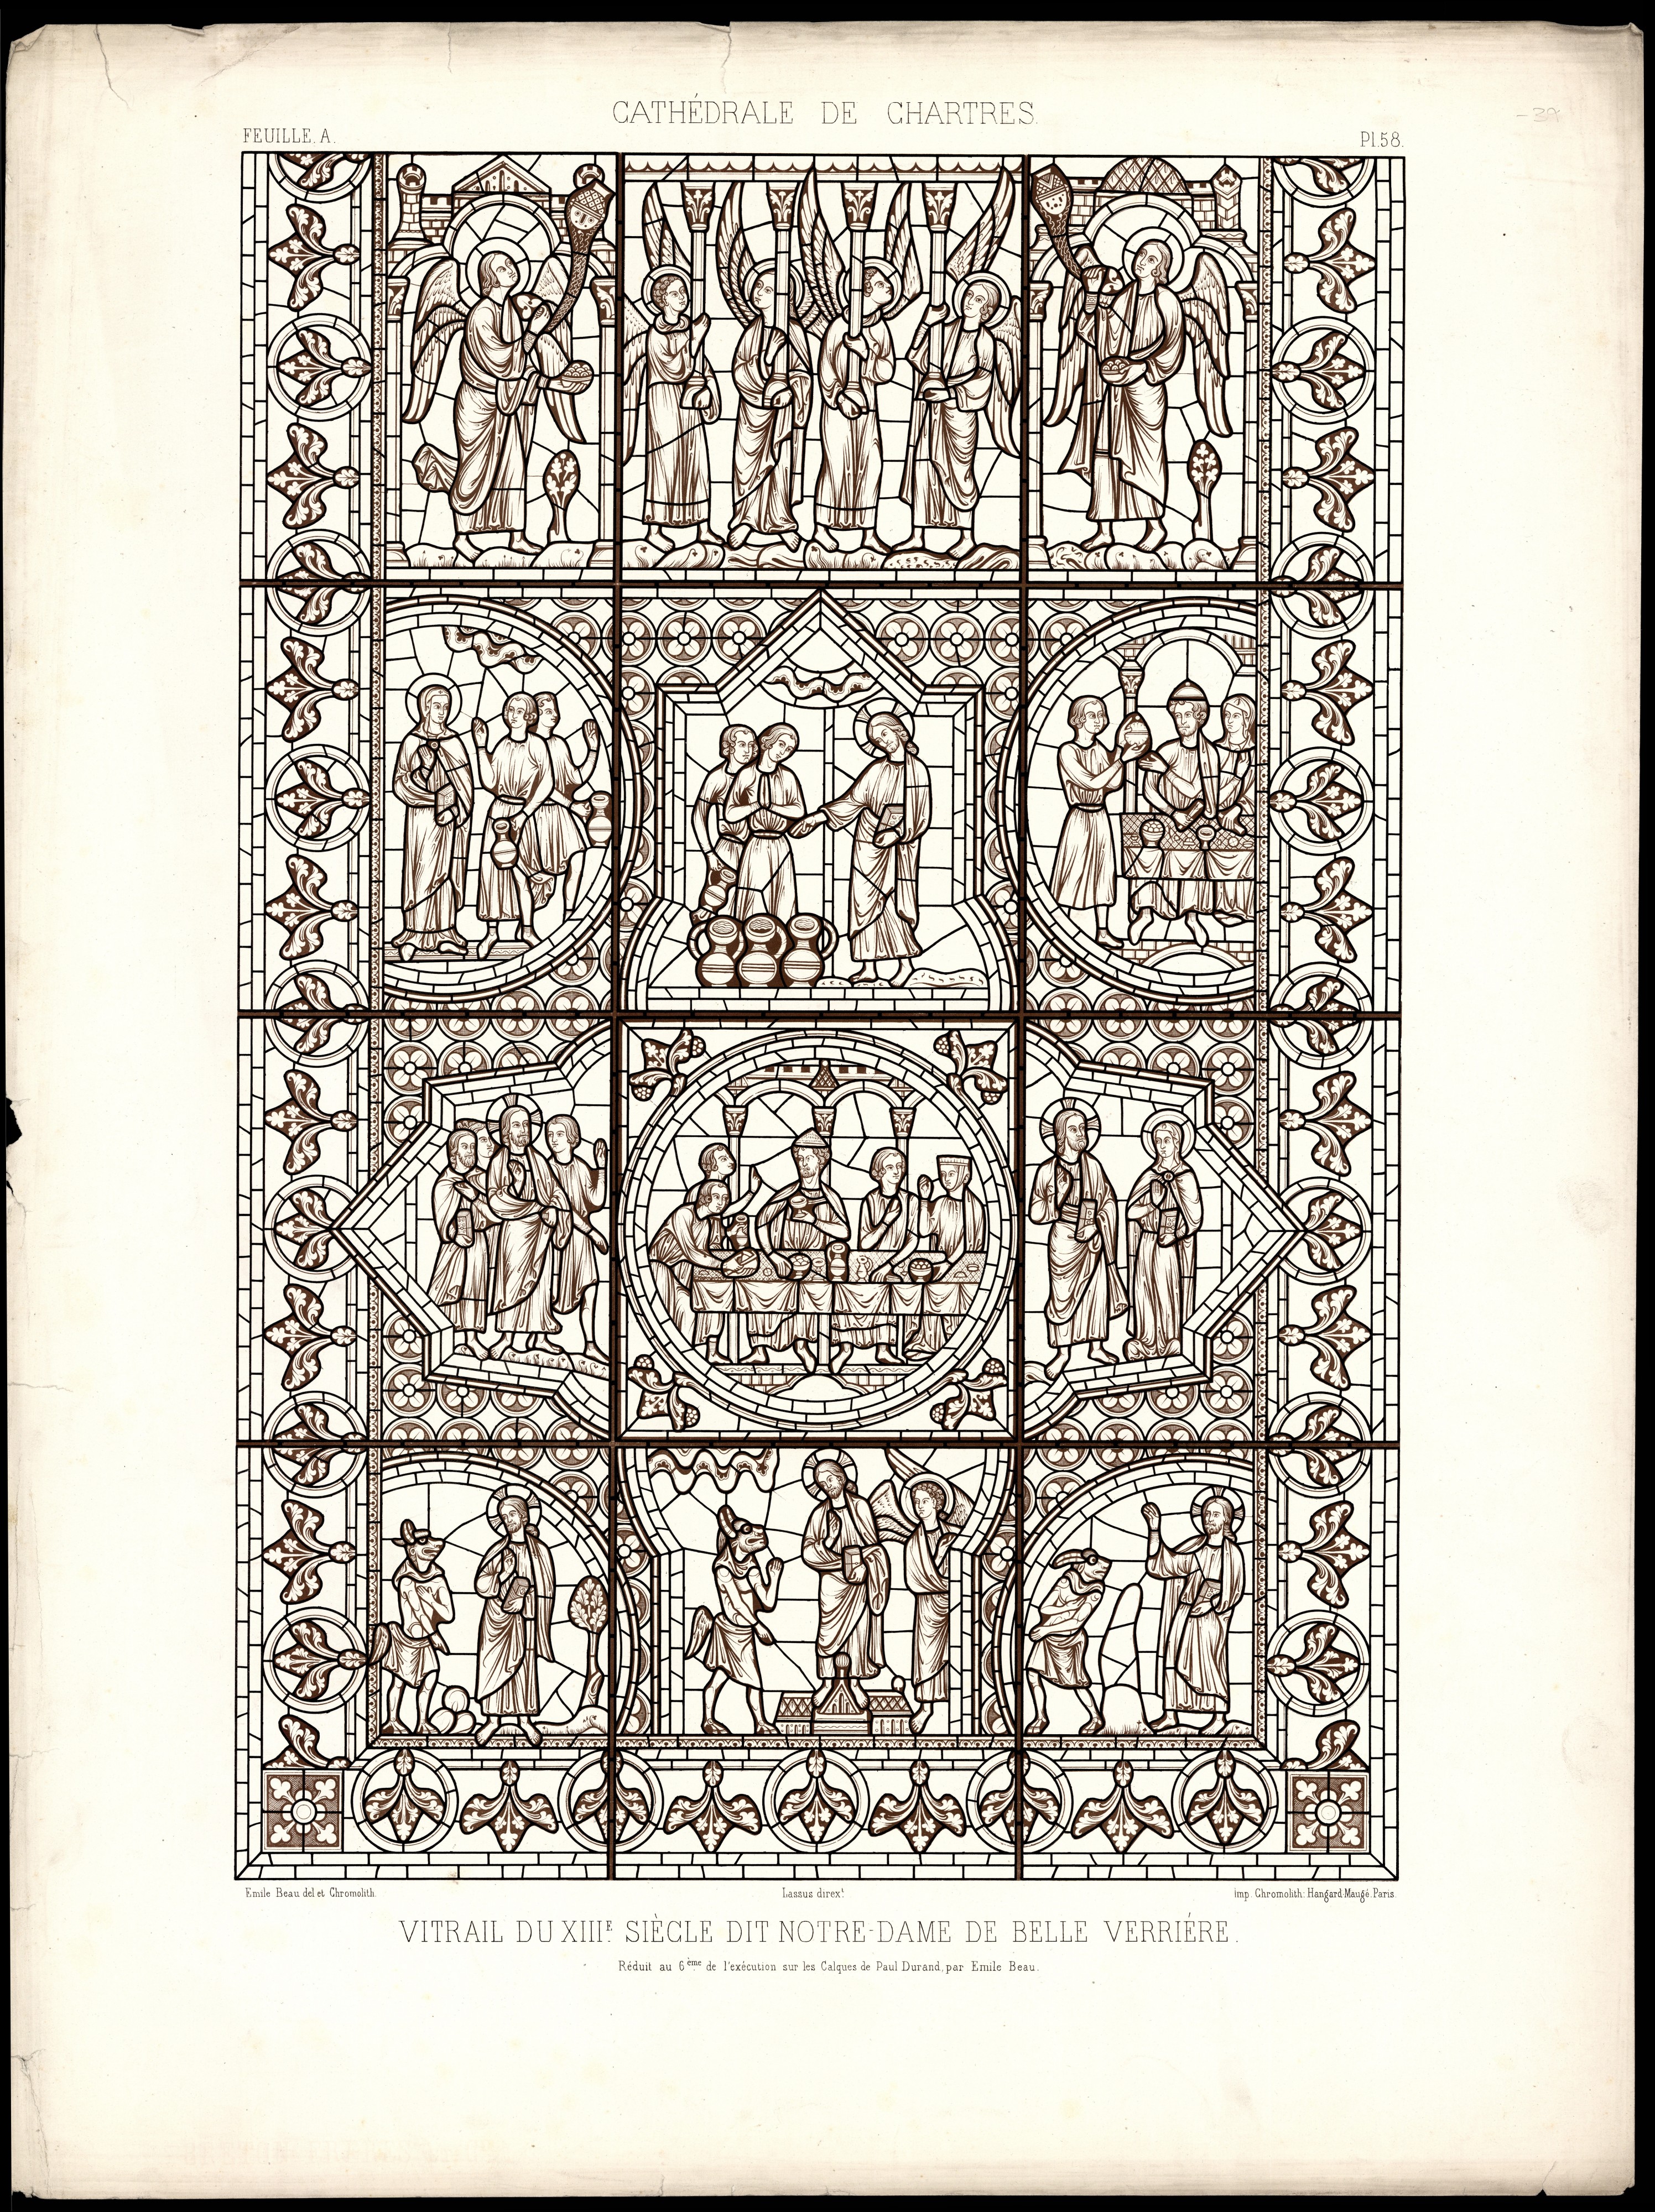 Monografie de la Cathedrale de Chartres - Atlas - Notre Dame de la Belle Verrière - Feuille A Lithographie